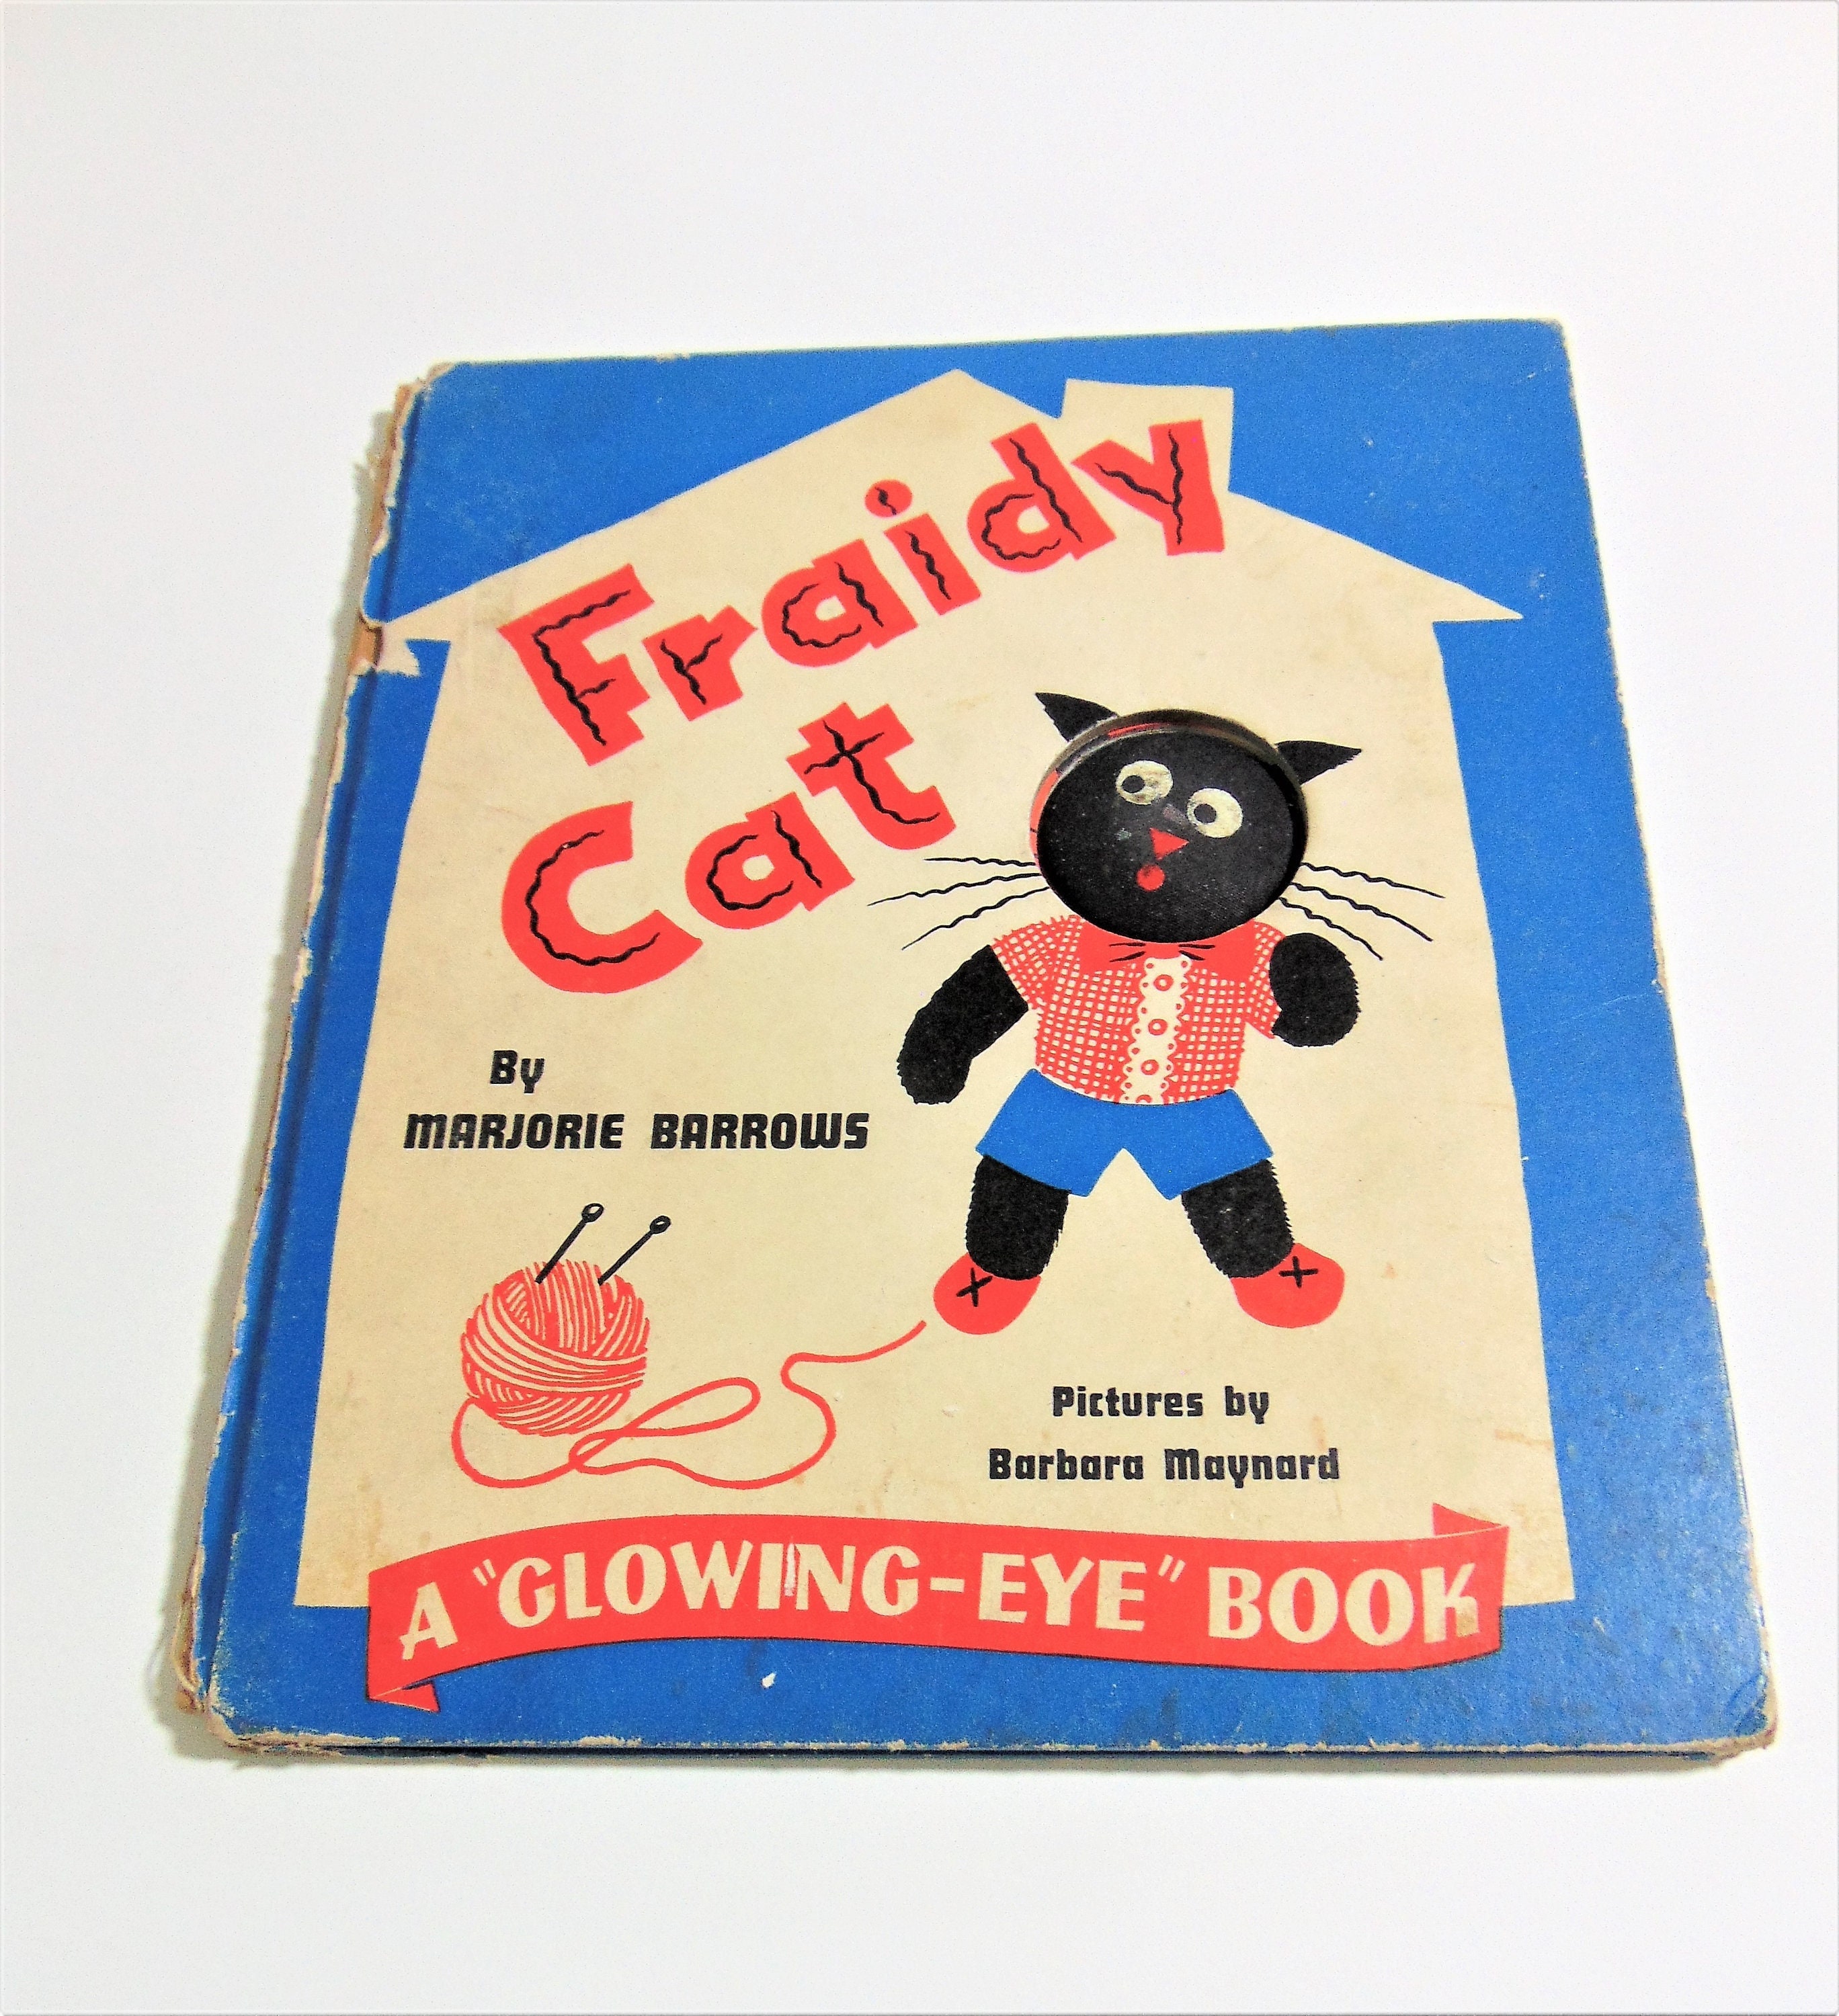 Fraidy Cat, Vintage 1940s Children's Book, Written by Marjorie